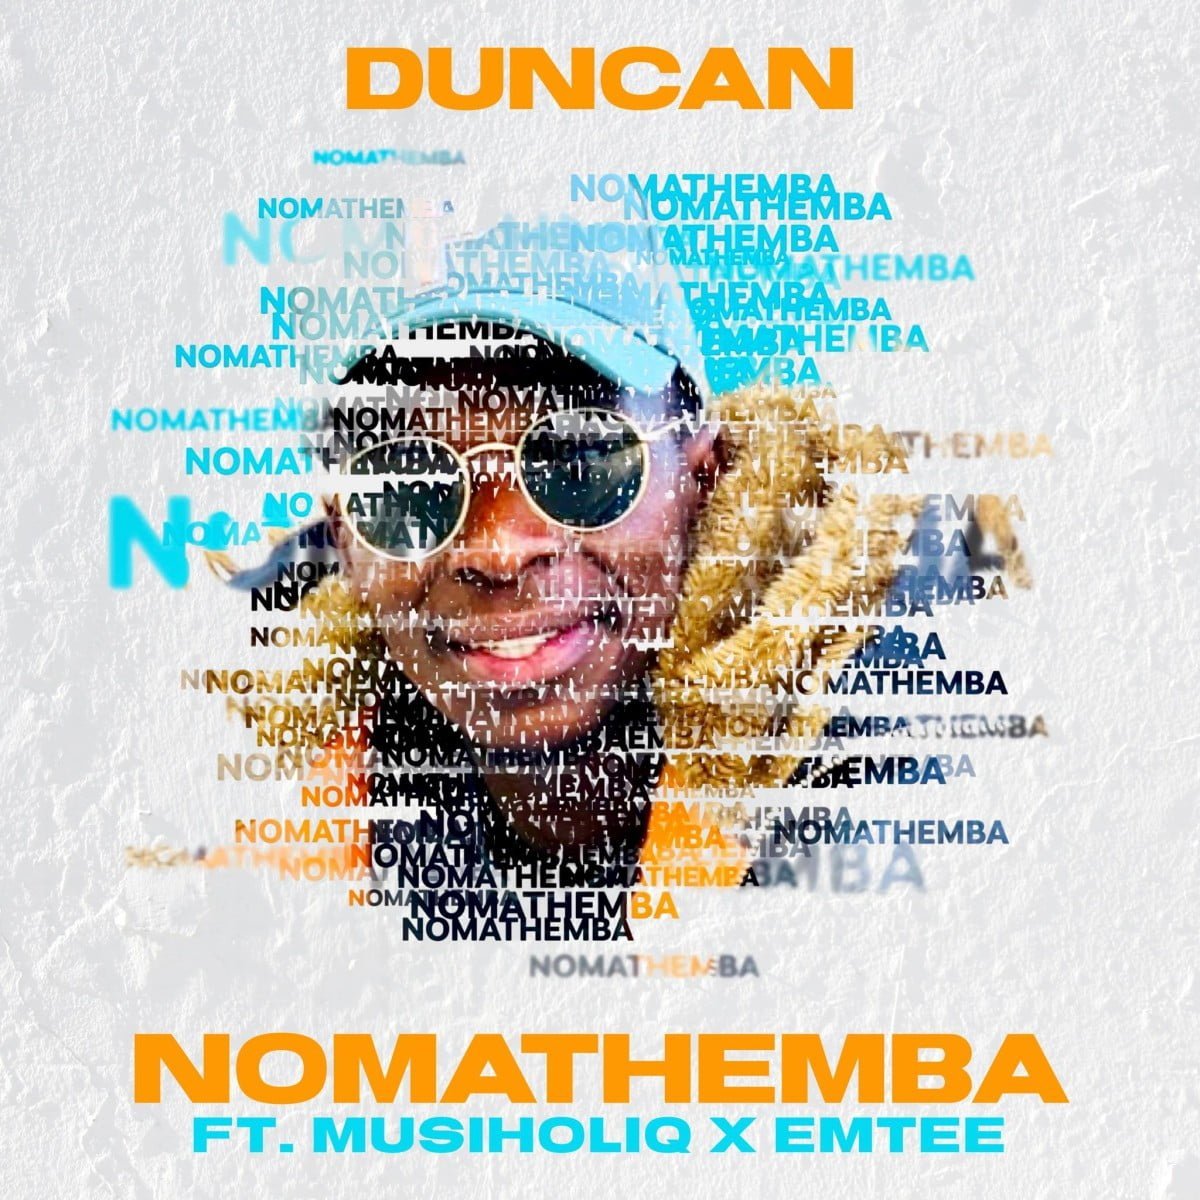 Duncan - Nomathemba ft. Emtee & MusiholiQ mp3 download free lyrics